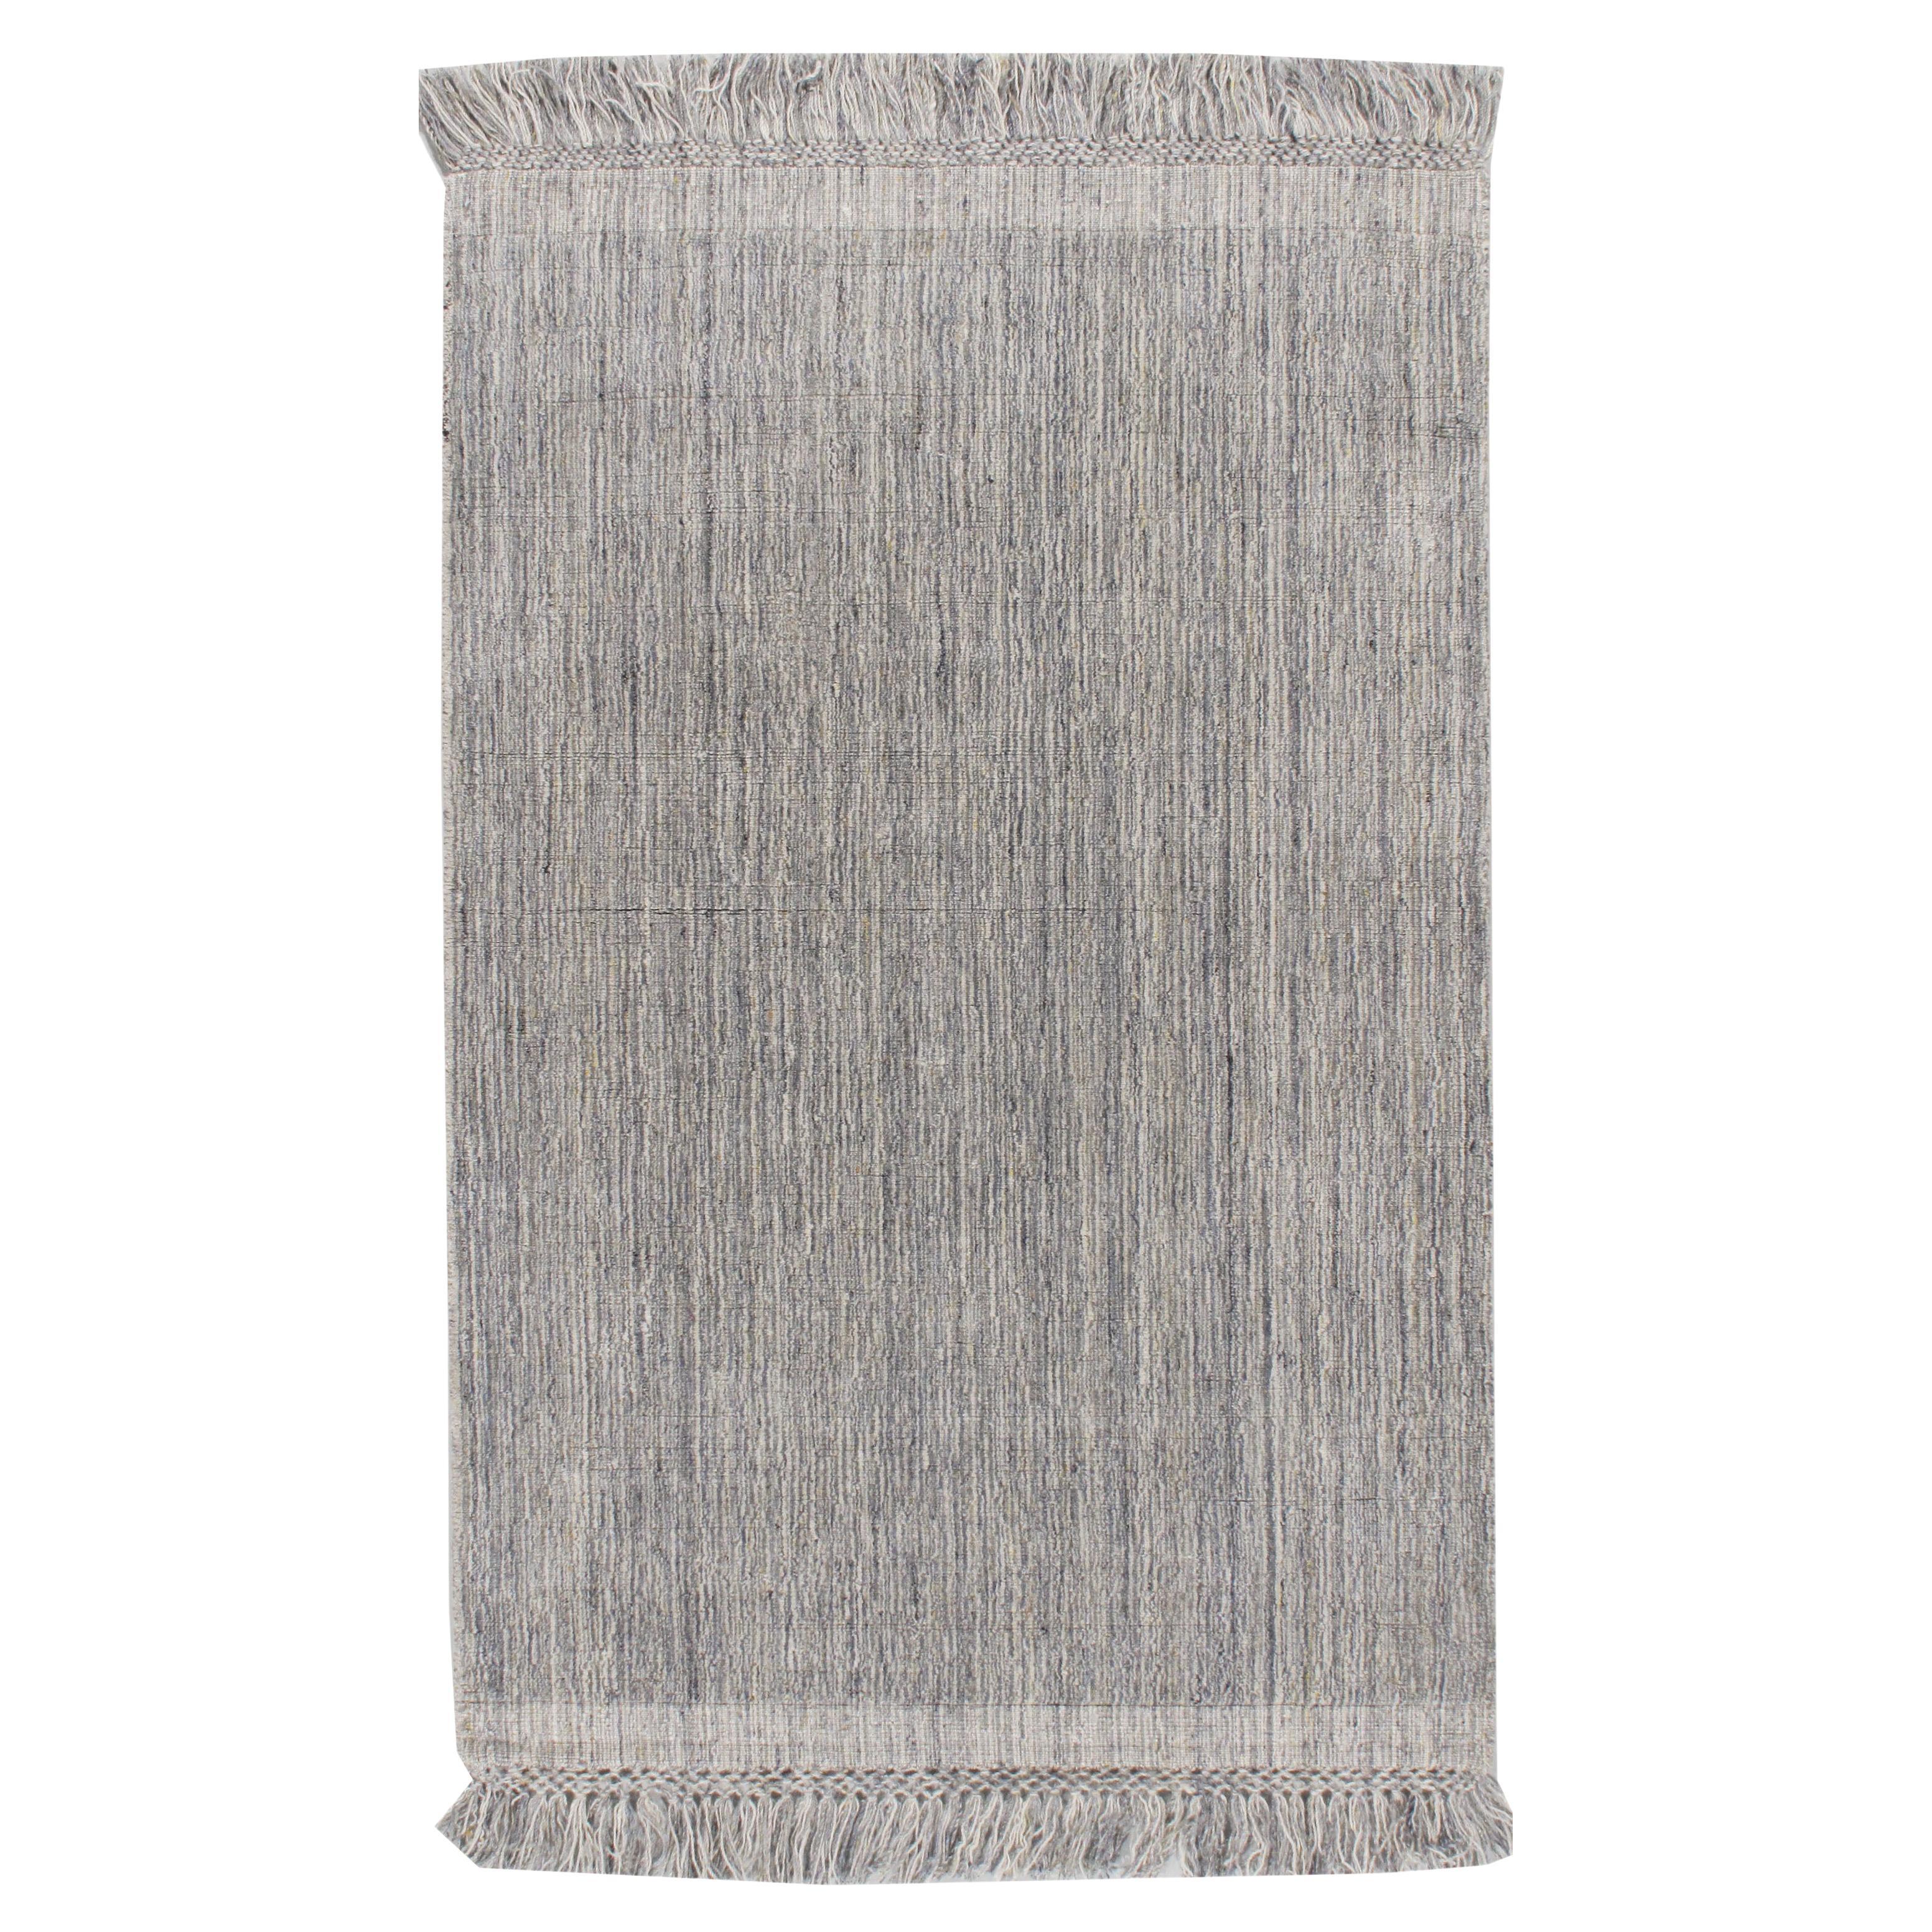 Zeitgenössischer Omni-Teppich in Silber, Anthrazit und Elfenbein  4' x 6'